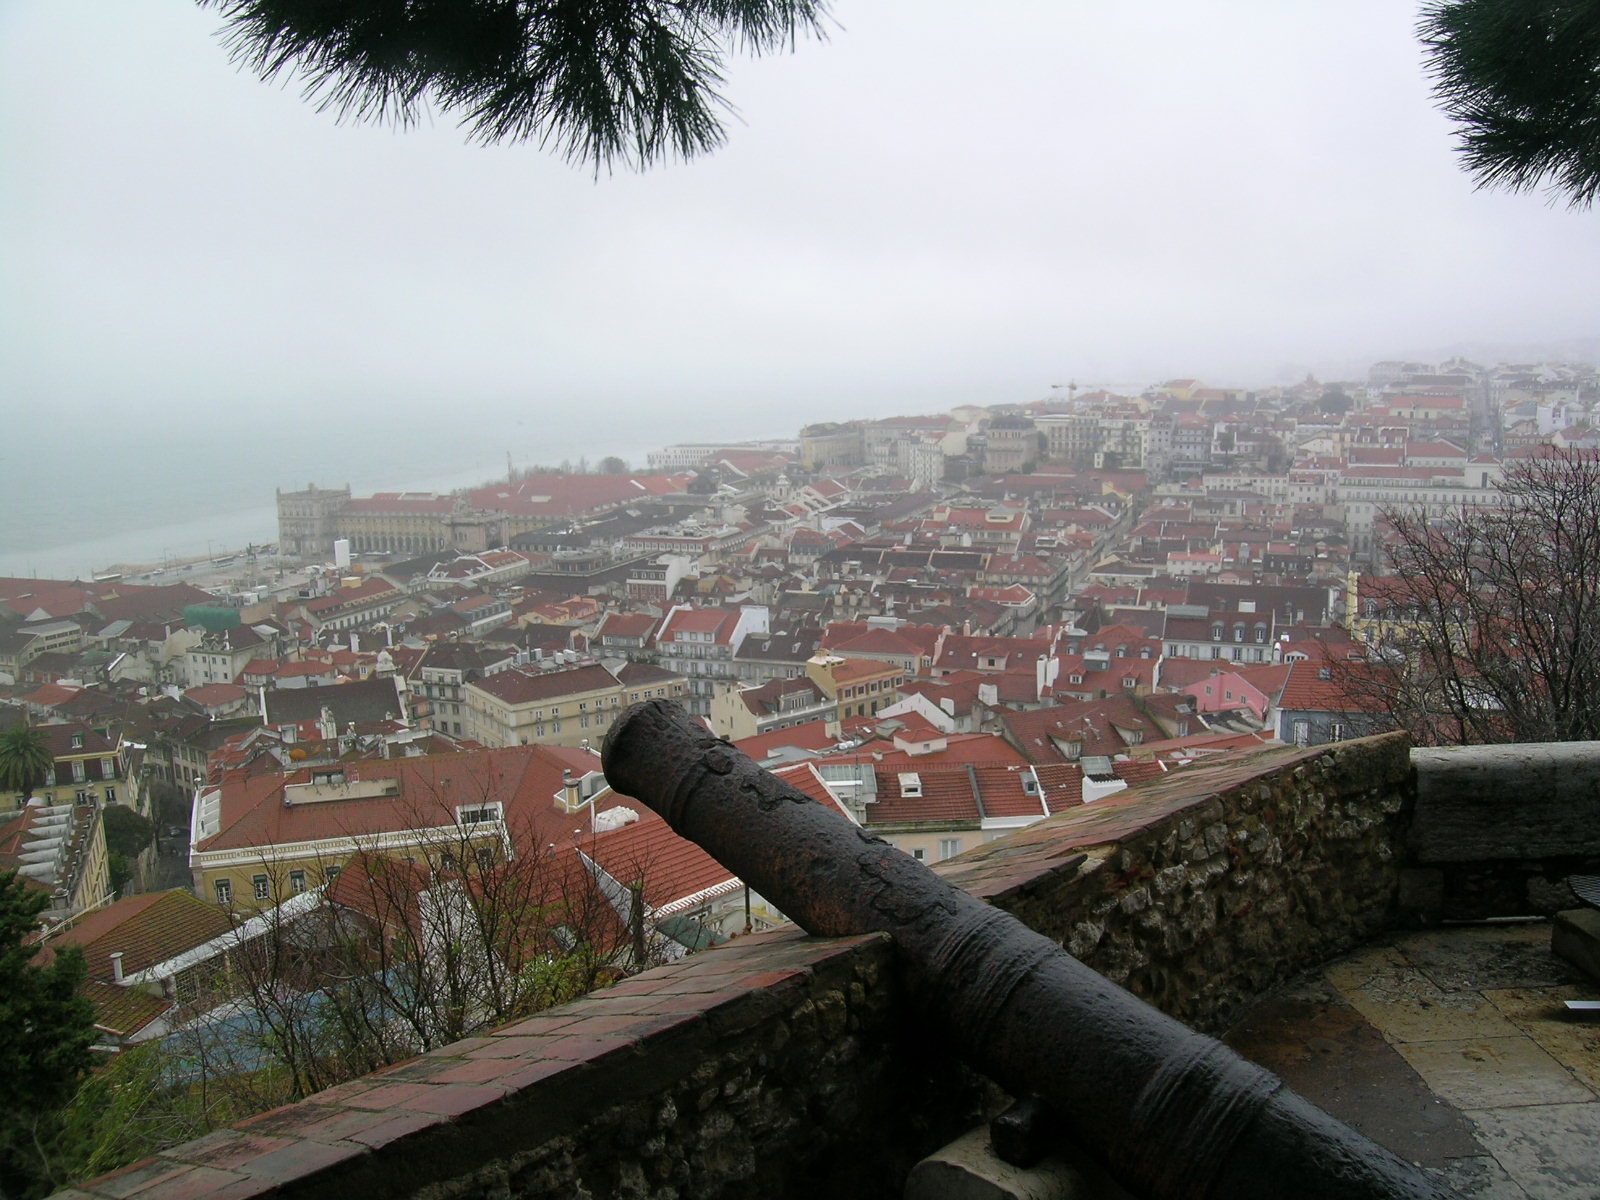 Turismo in Portogallo: entrate in aumento e tanti progetti per il 2009